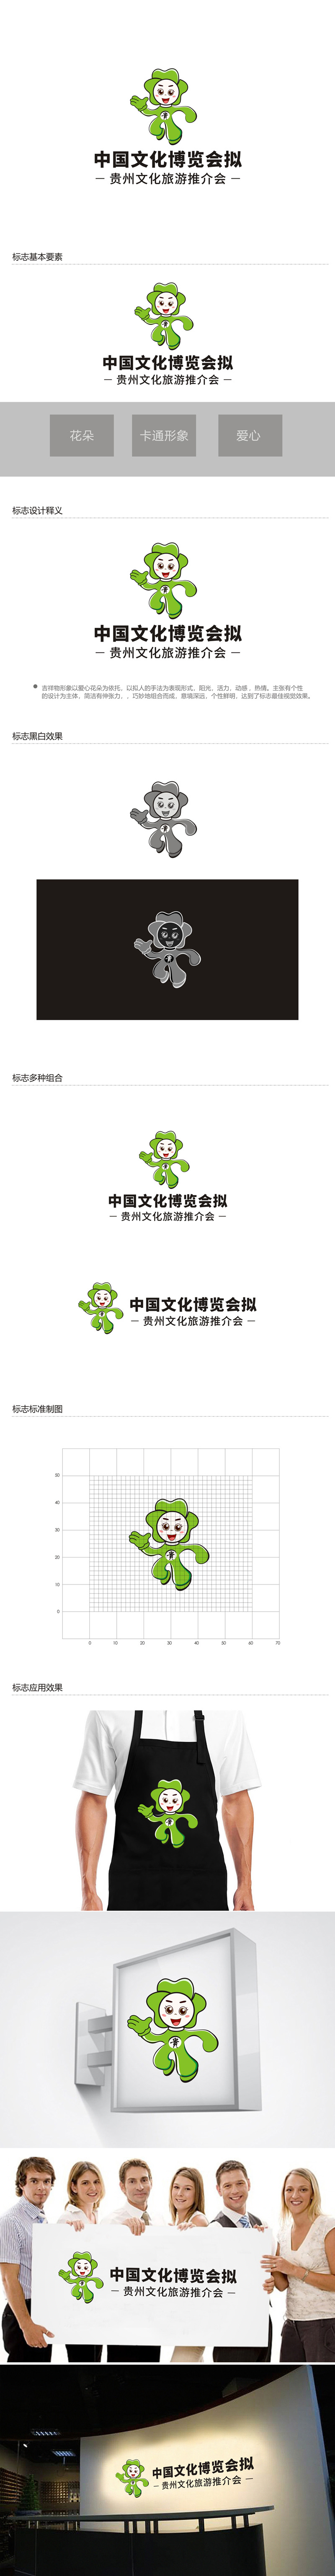 郑国麟的中国文化博览会拟贵州文化旅游推介会logo设计